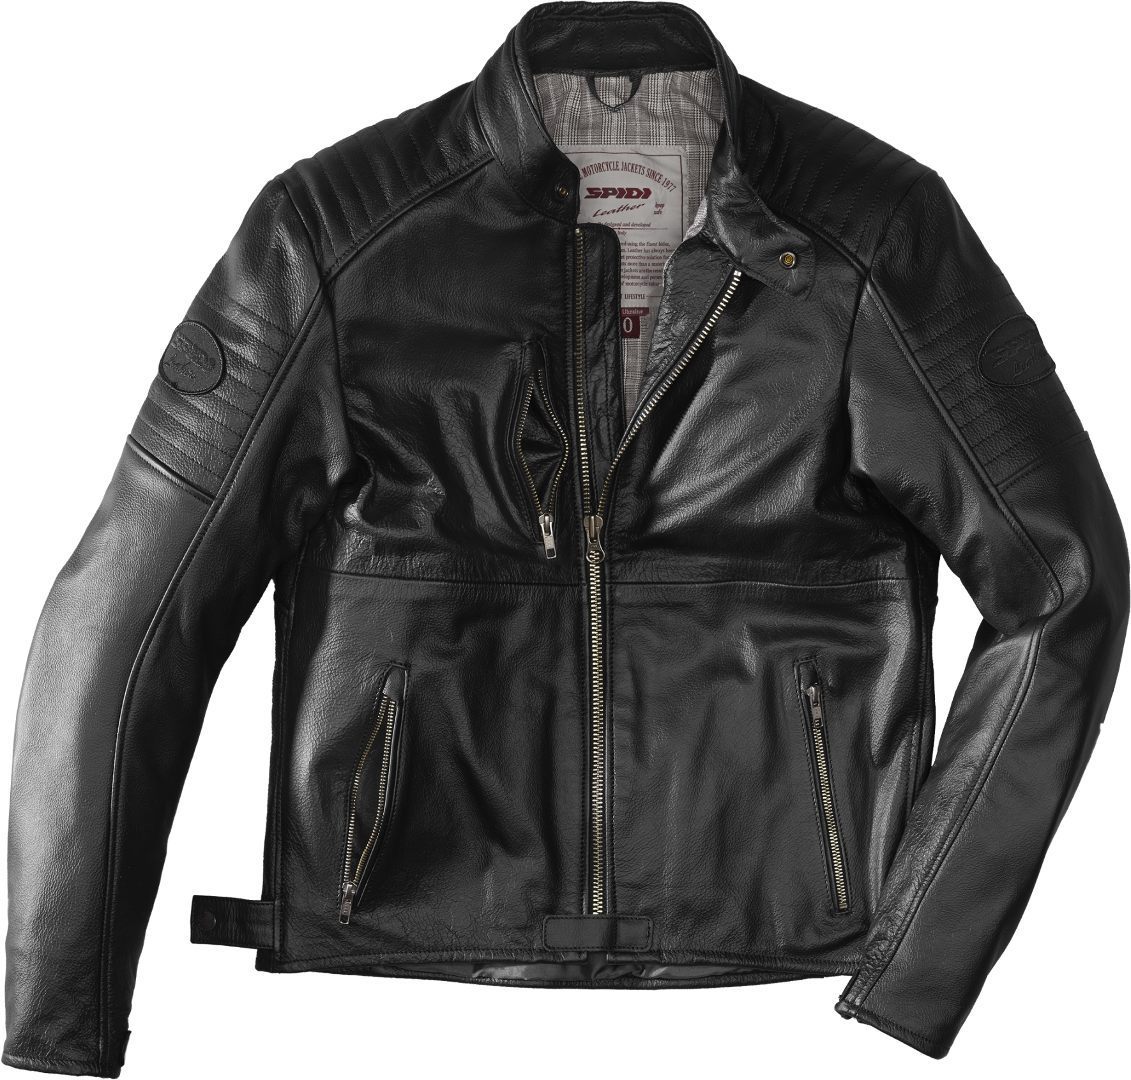 Image of Spidi Clubber Extreme Jacket Black Size 48 ID 8030161356137